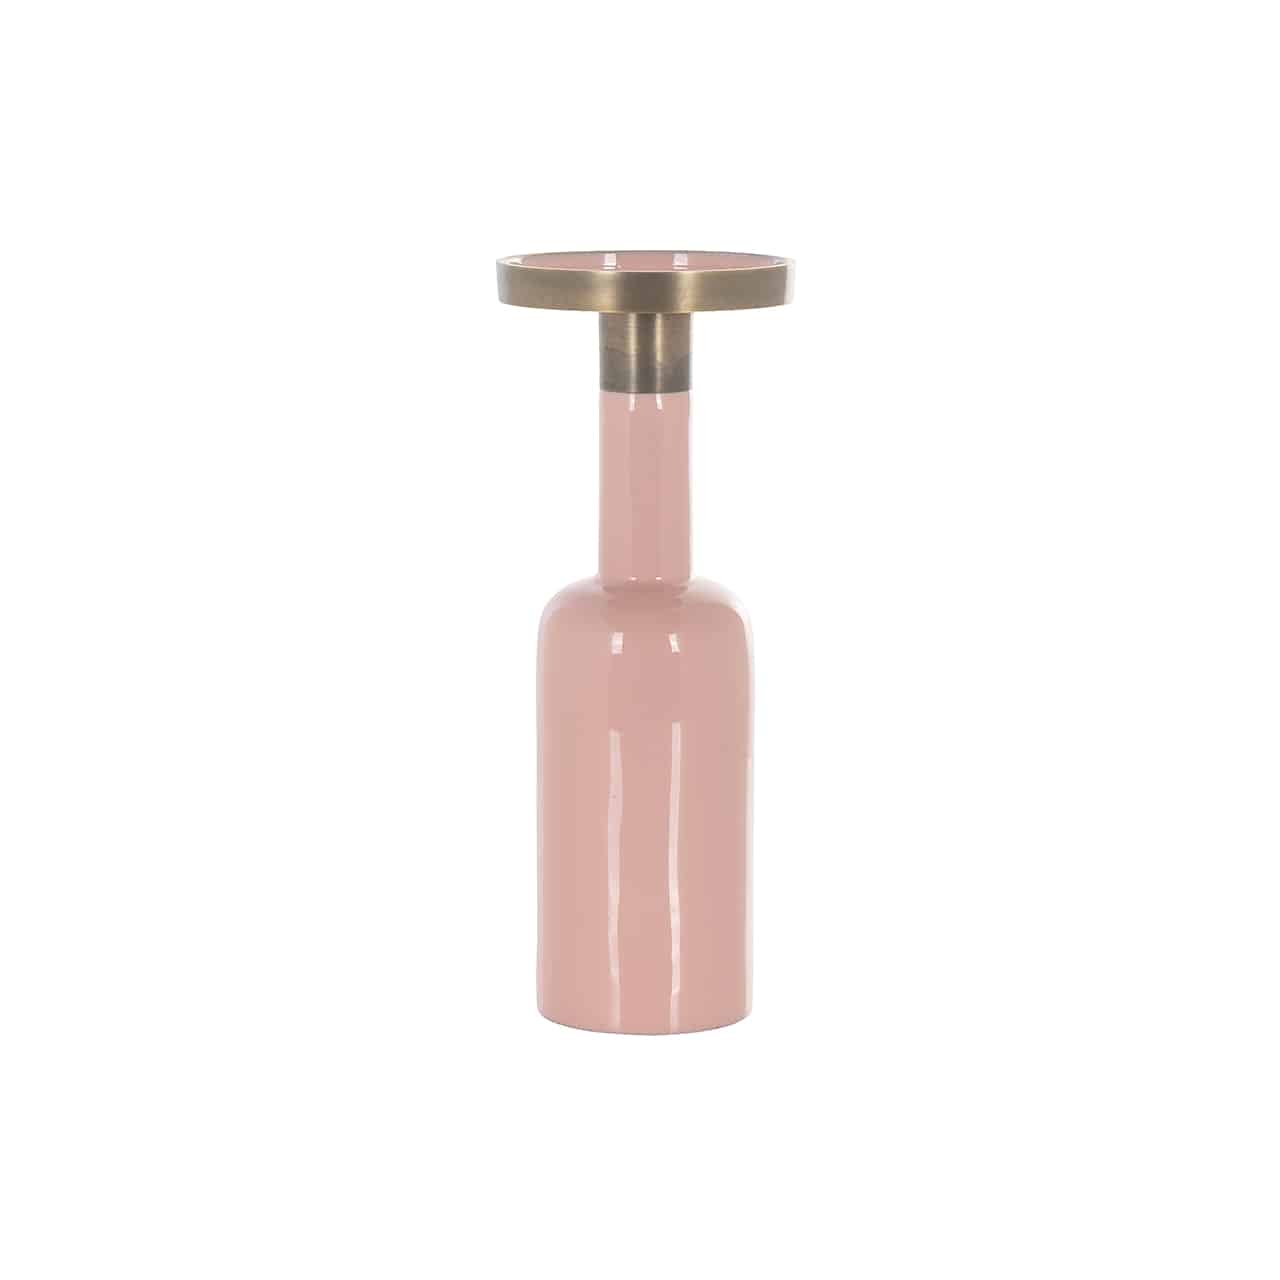 Kerzenständer Esra groß pink von Richmond; im Design einer rosa Flasche mit langem Hals, auf dem ein goldener Kerzenteller angebracht ist.